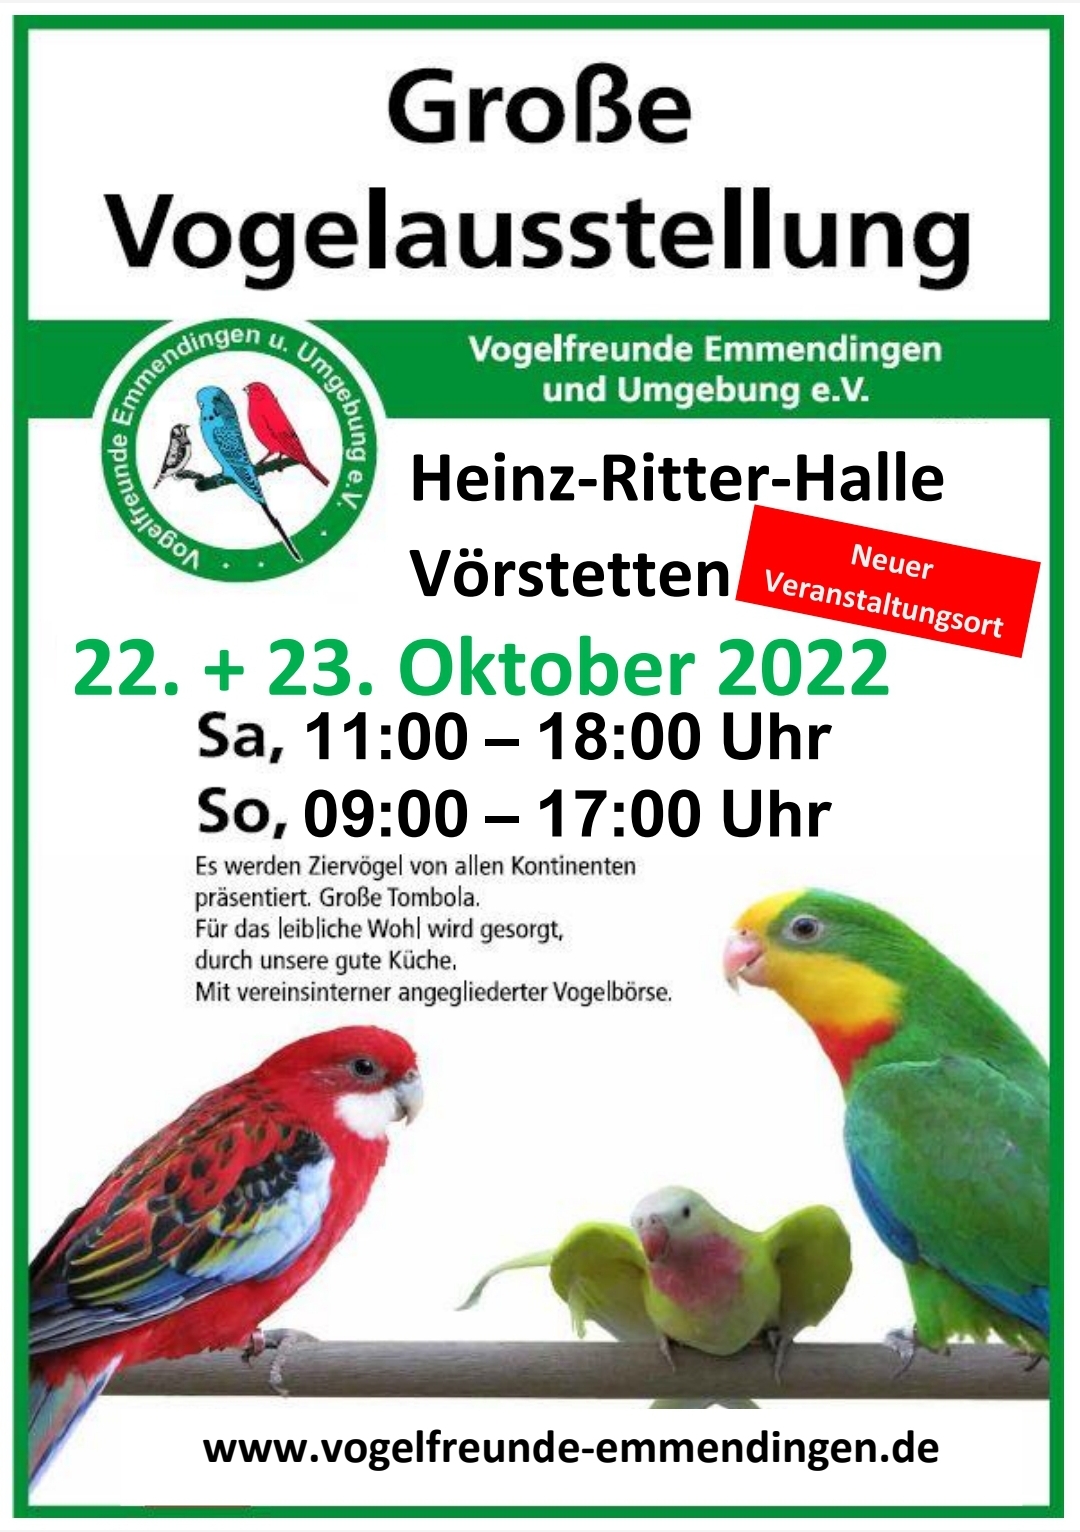 Große Vogelausstellung der Vogelfreunde Emmendingen und Umgebung e. V.